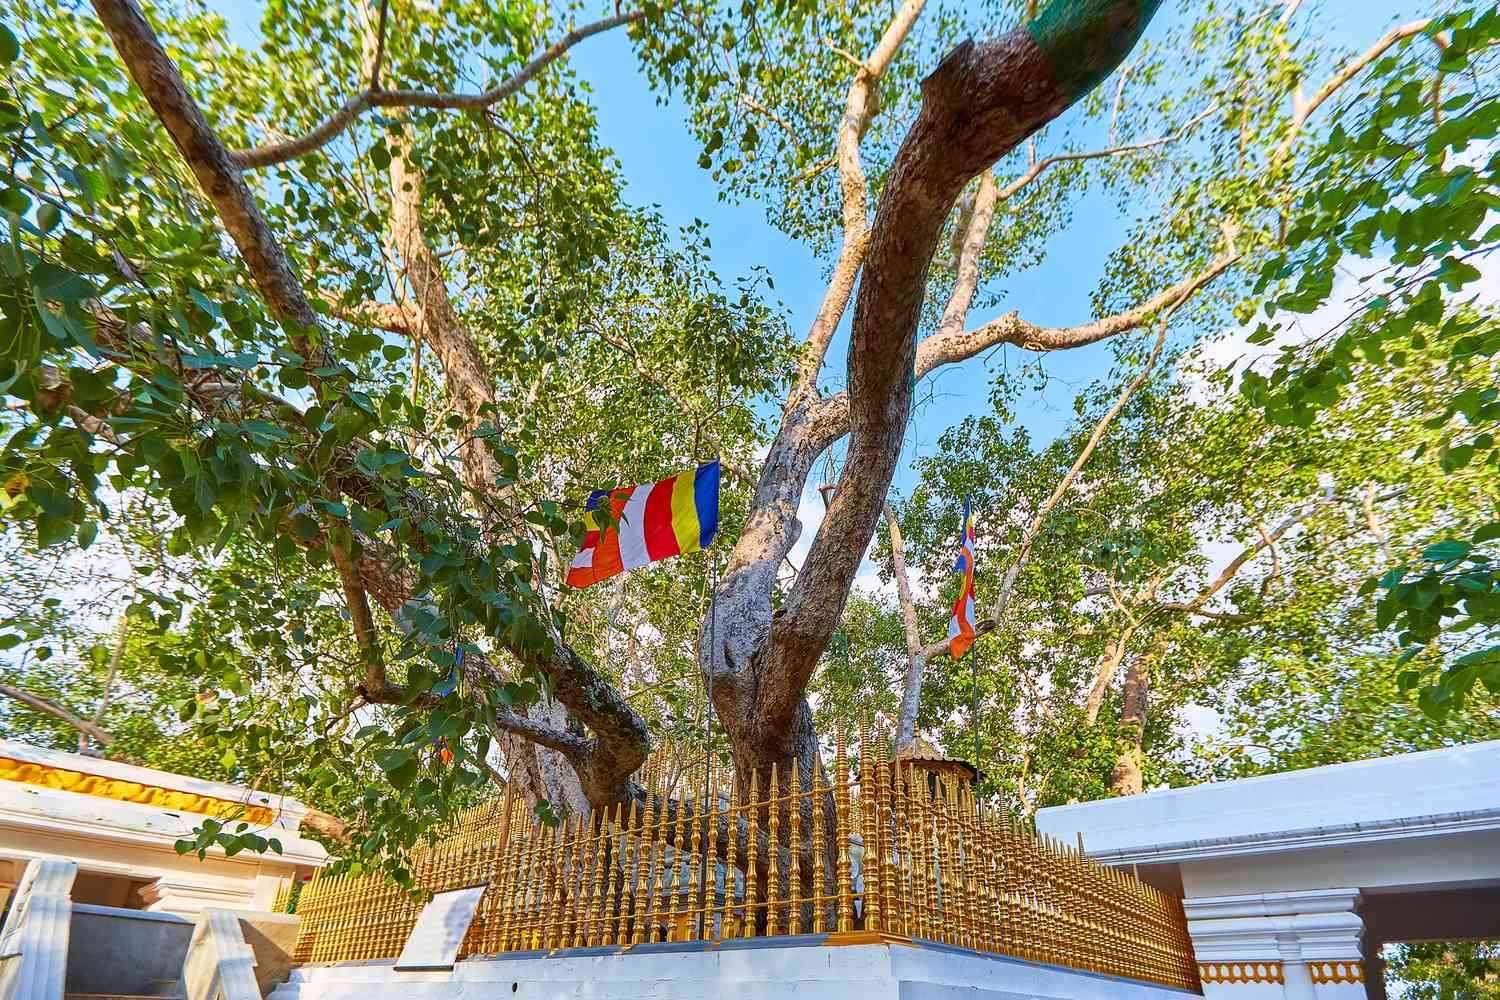 Jaya Sri Maha Bodhi ist ein heiliger Feigenbaum in den Mahamewna-Gärten, Anuradhapura. Ein heiliger Ort für Buddhisten auf Sri Lanka